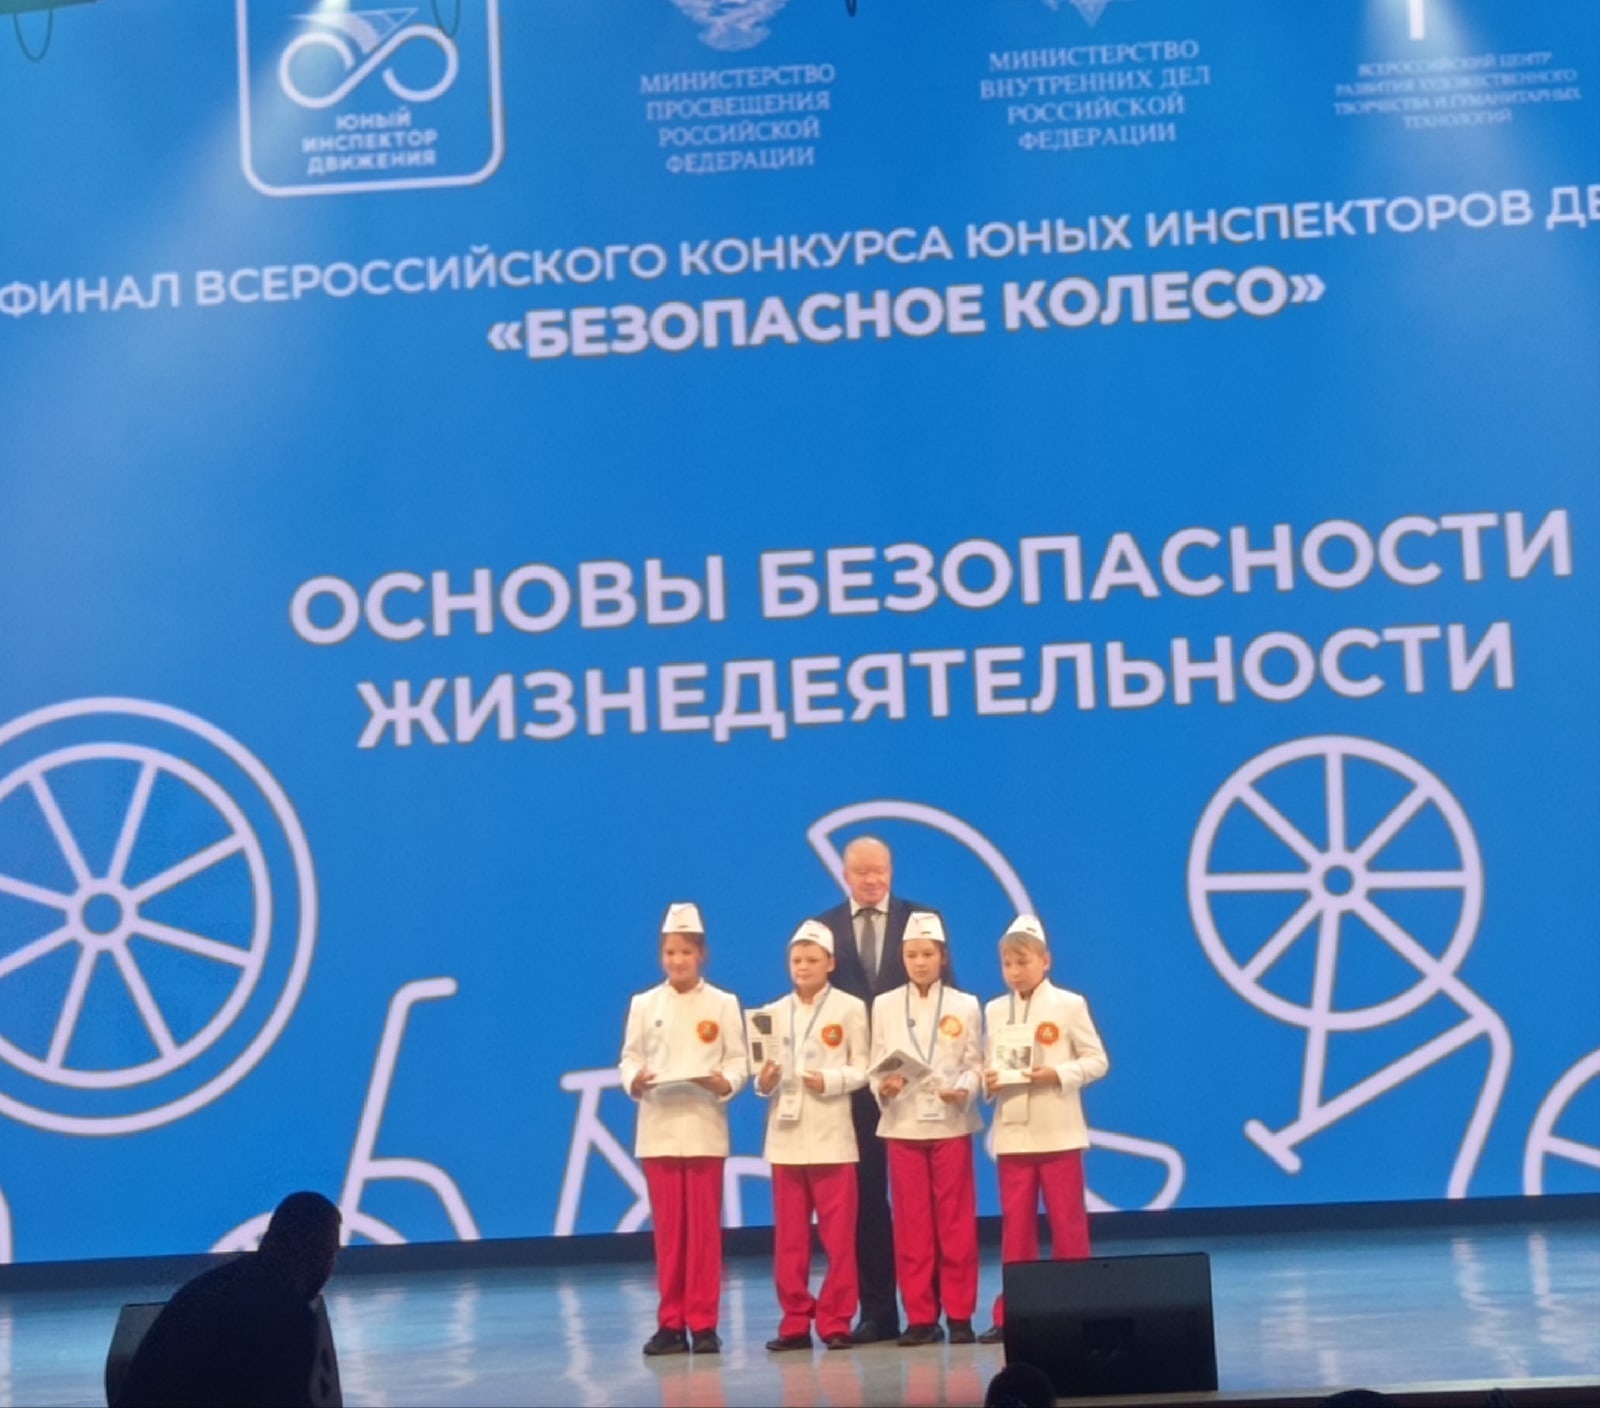 Завершился финал всероссийского конкурса юных инспекторов движения «Безопасное колесо» 2022